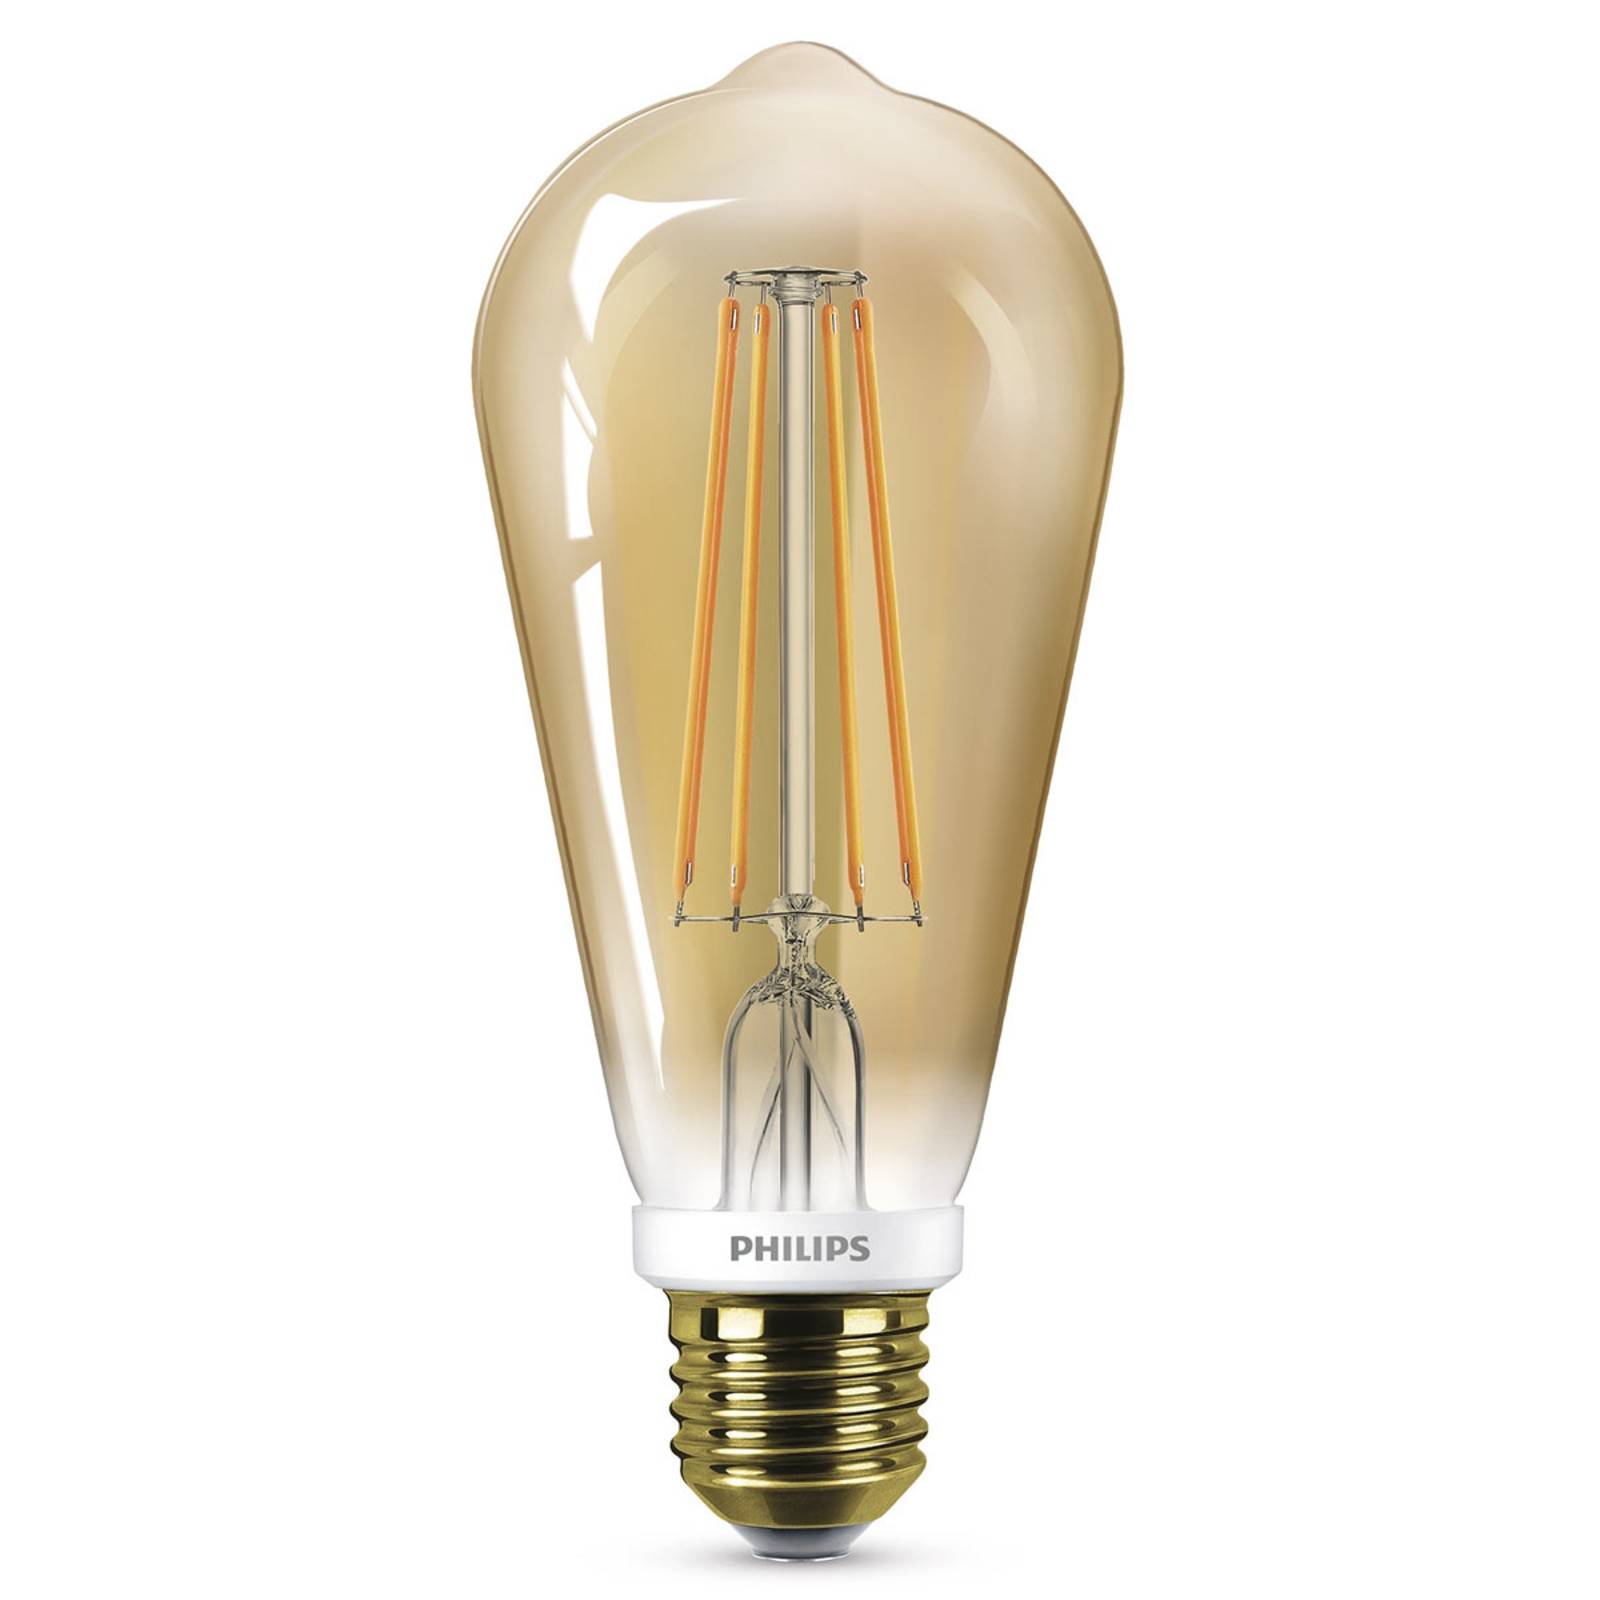 Philips LED lámpa E27 ST64 4W arany, dimm.